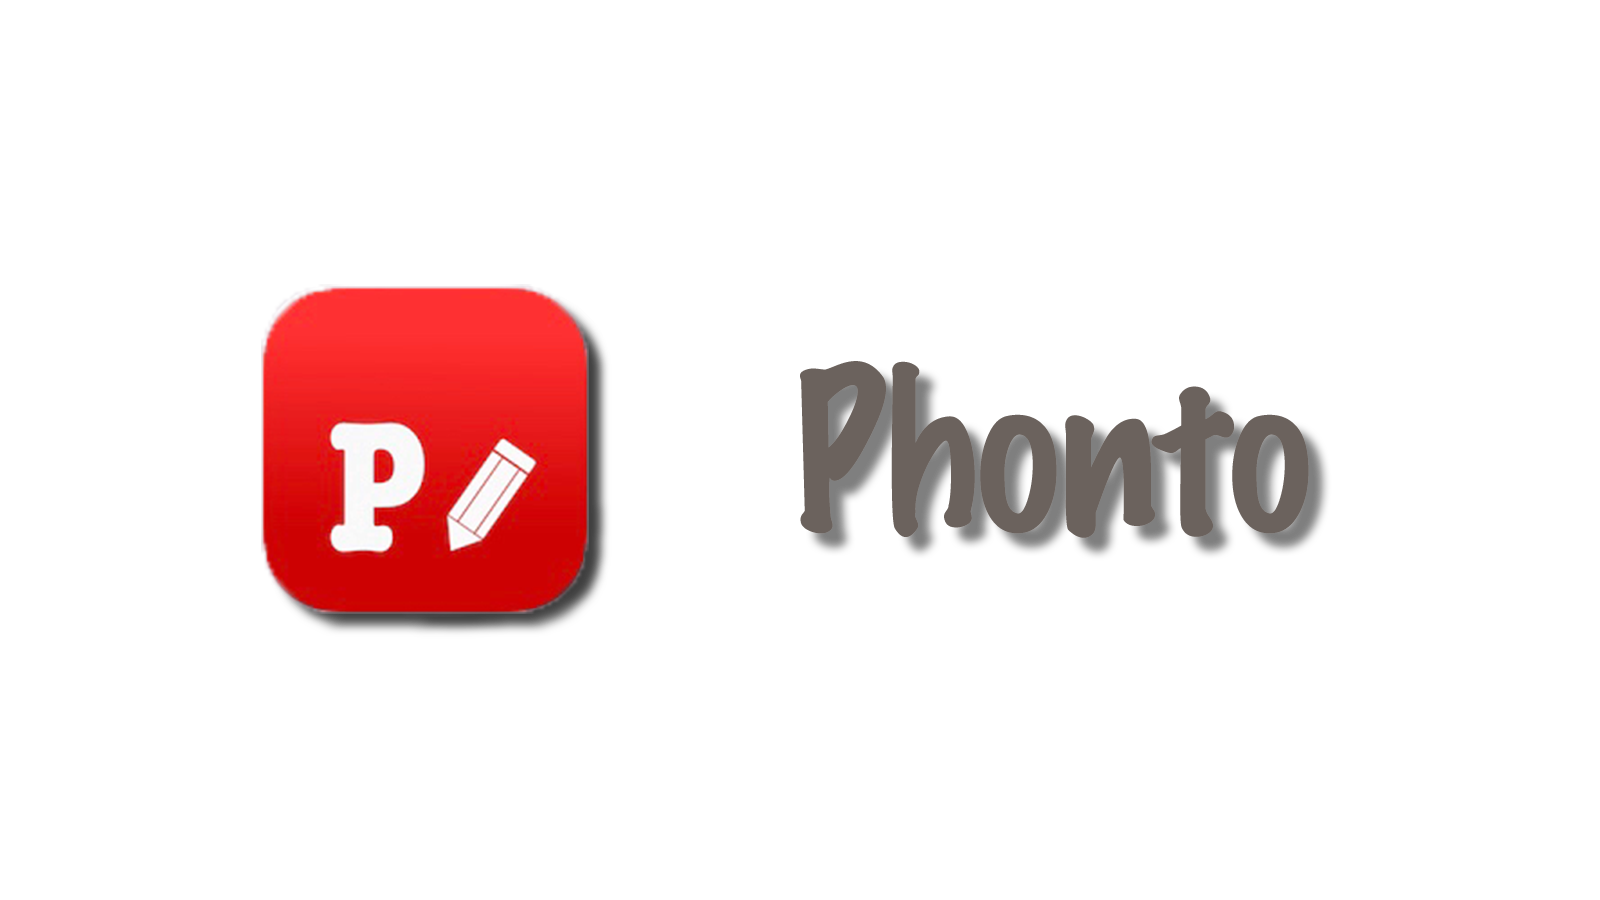 文字入れアプリ Phonto の便利な使い方 文字だけの画像をデザインする フォトグラファー 竹内悠貴